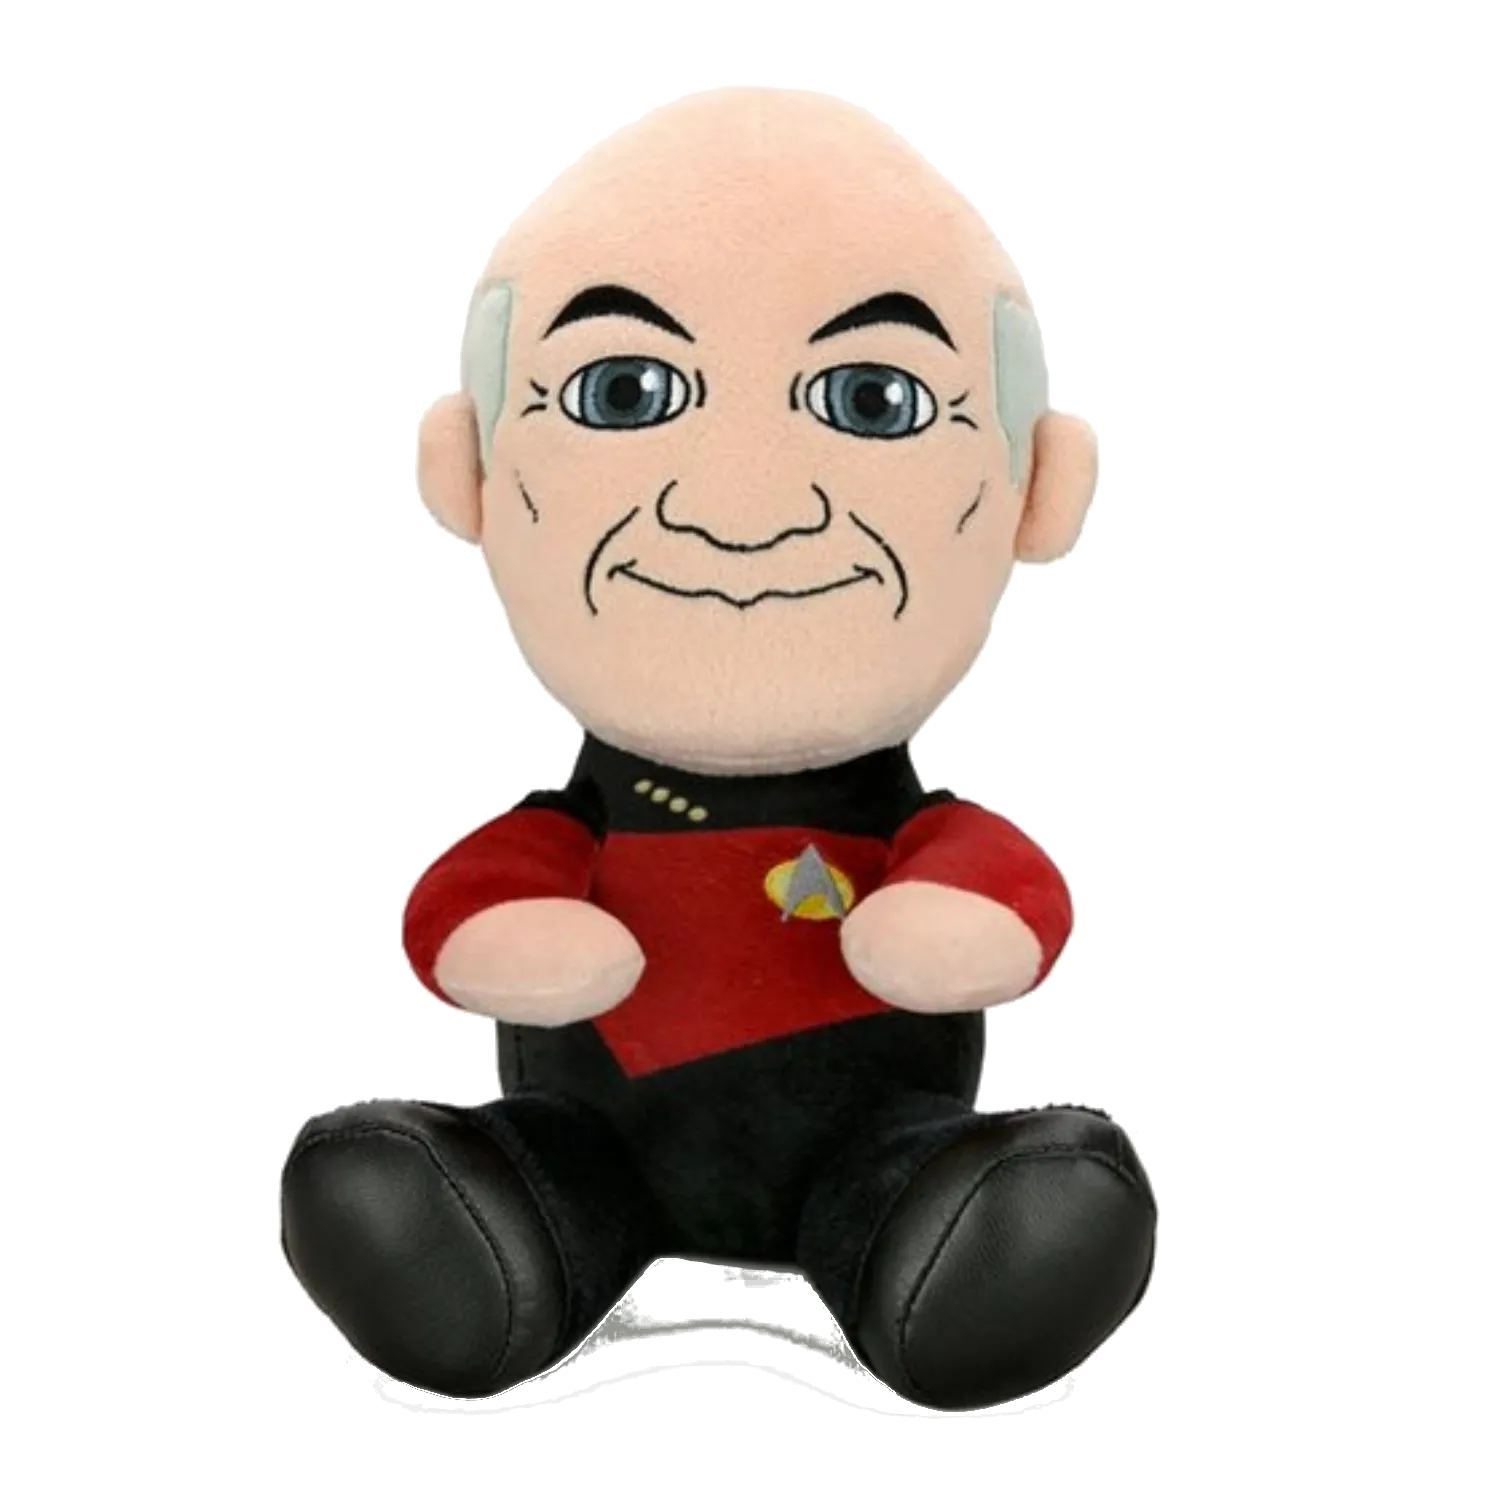 Star Trek Picard Plush